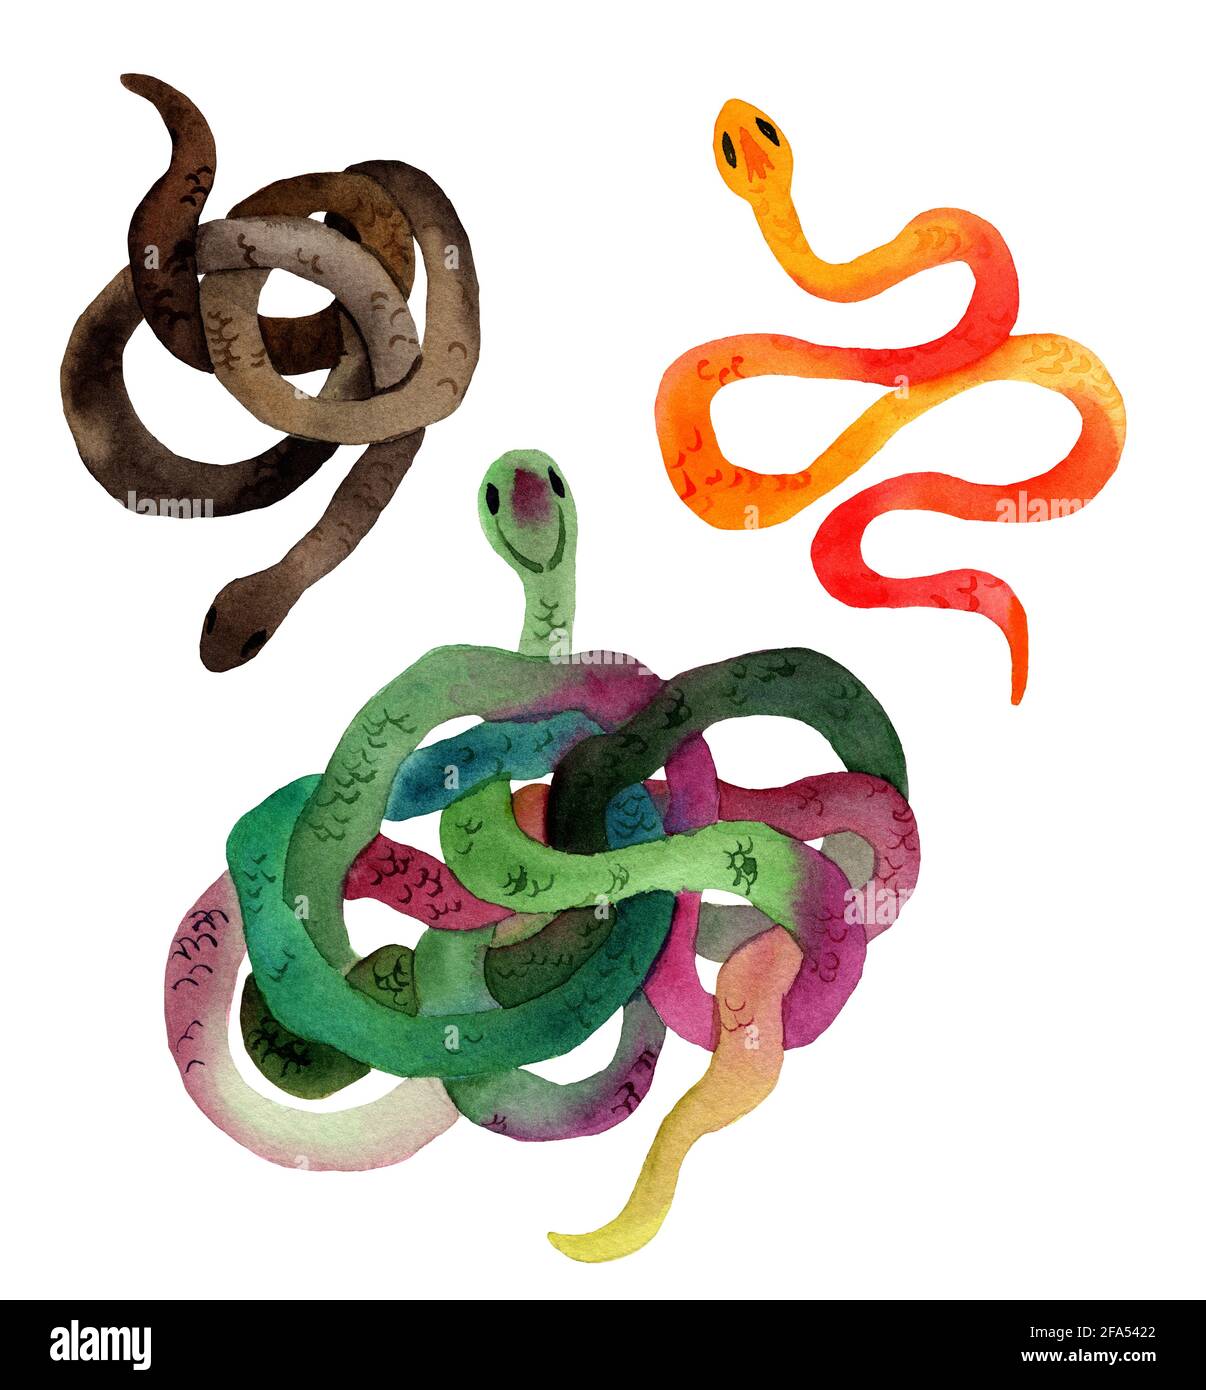 Acuarela Ilustración dibujada a mano de serpientes en color naranja,  marrón, verde con textura de piel. La serpiente yace en la forma de un  anillo. Estilo de dibujos animados de animales Fotografía